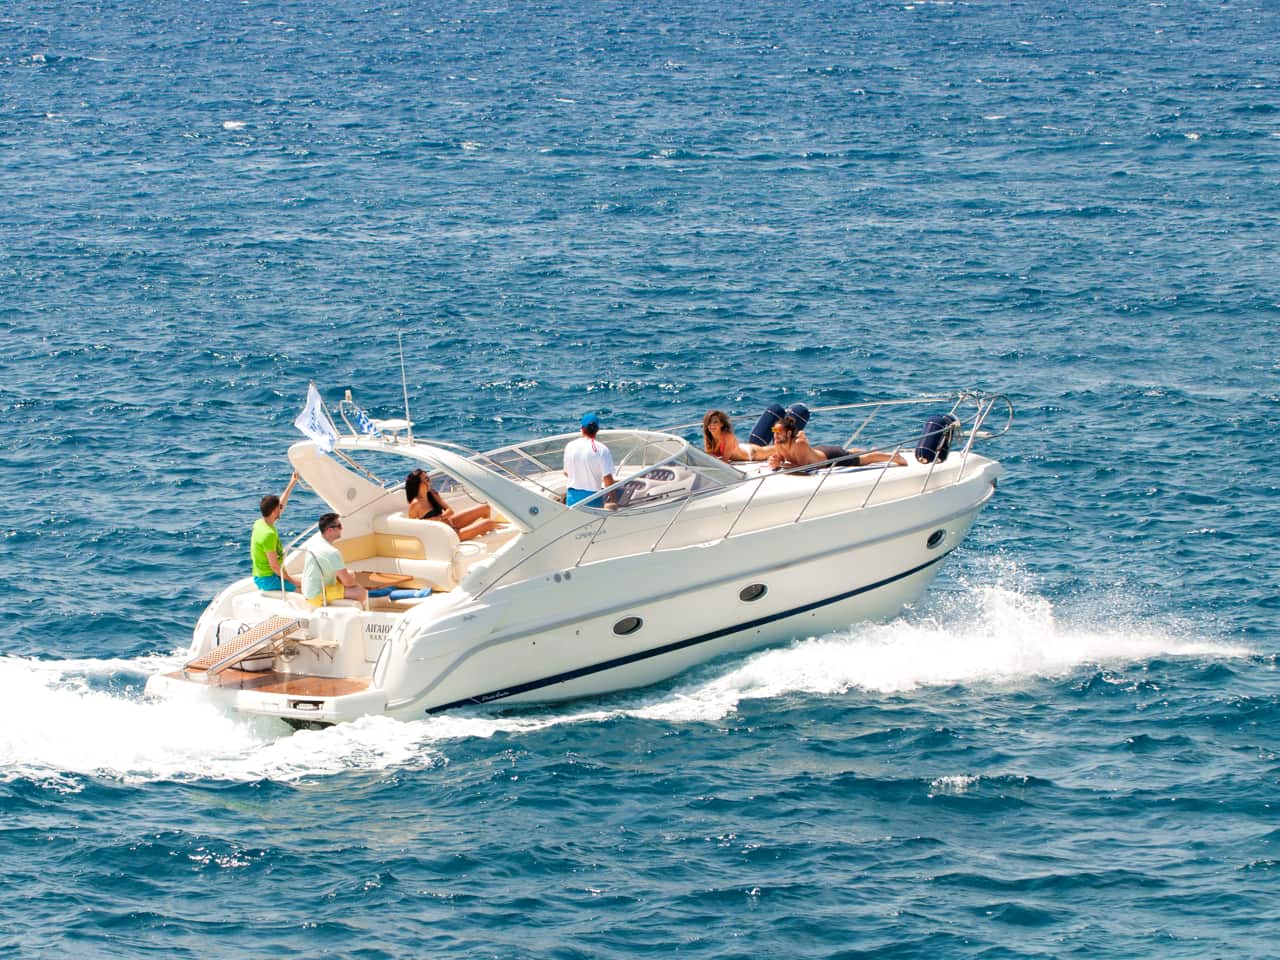 Daily Yacht Cruise To Kolokitha Island & Spinalonga in Crete, boat trips elounda spinalonga, boat cruises east crete, best yacht cruise spinalonga kolokitha crete, elounda things to do, elounda village best activities, travel tips elounda village